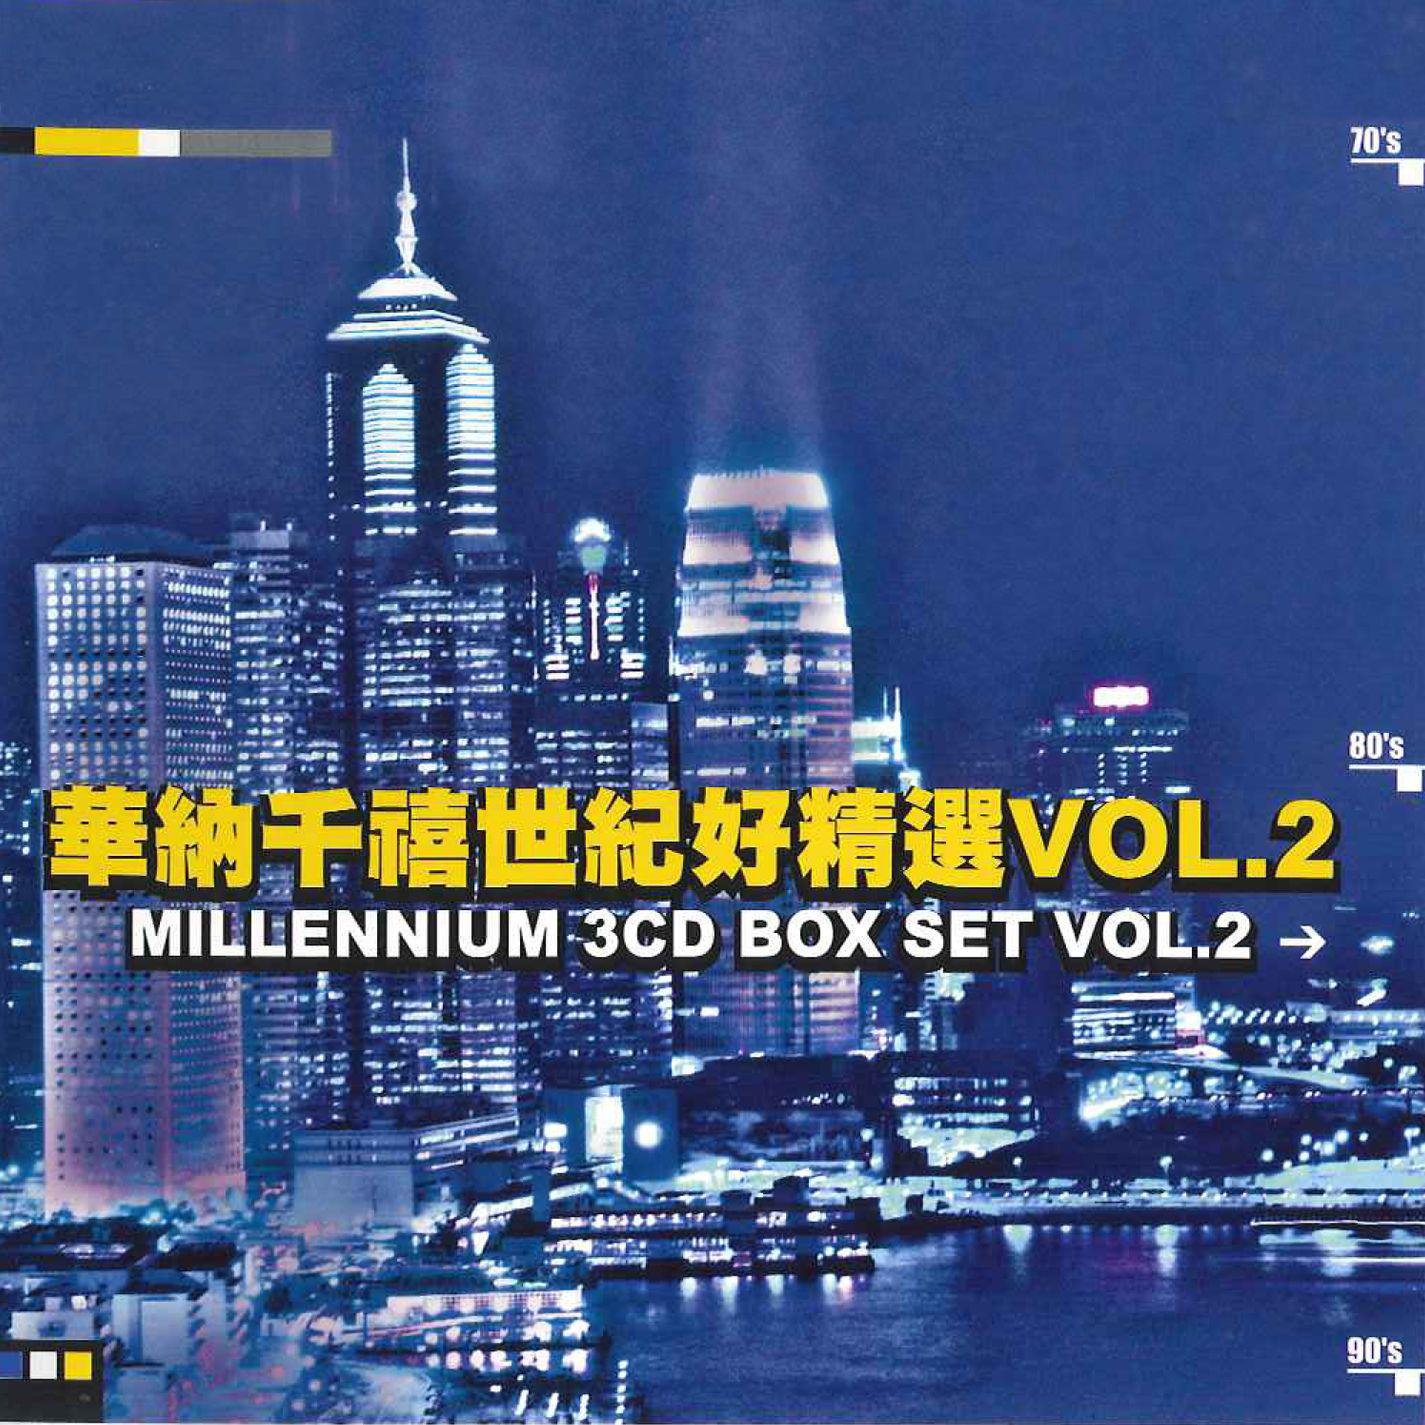 故事的角色歌词 歌手王杰-专辑Millennium Greatest Hits Vol.2-单曲《故事的角色》LRC歌词下载